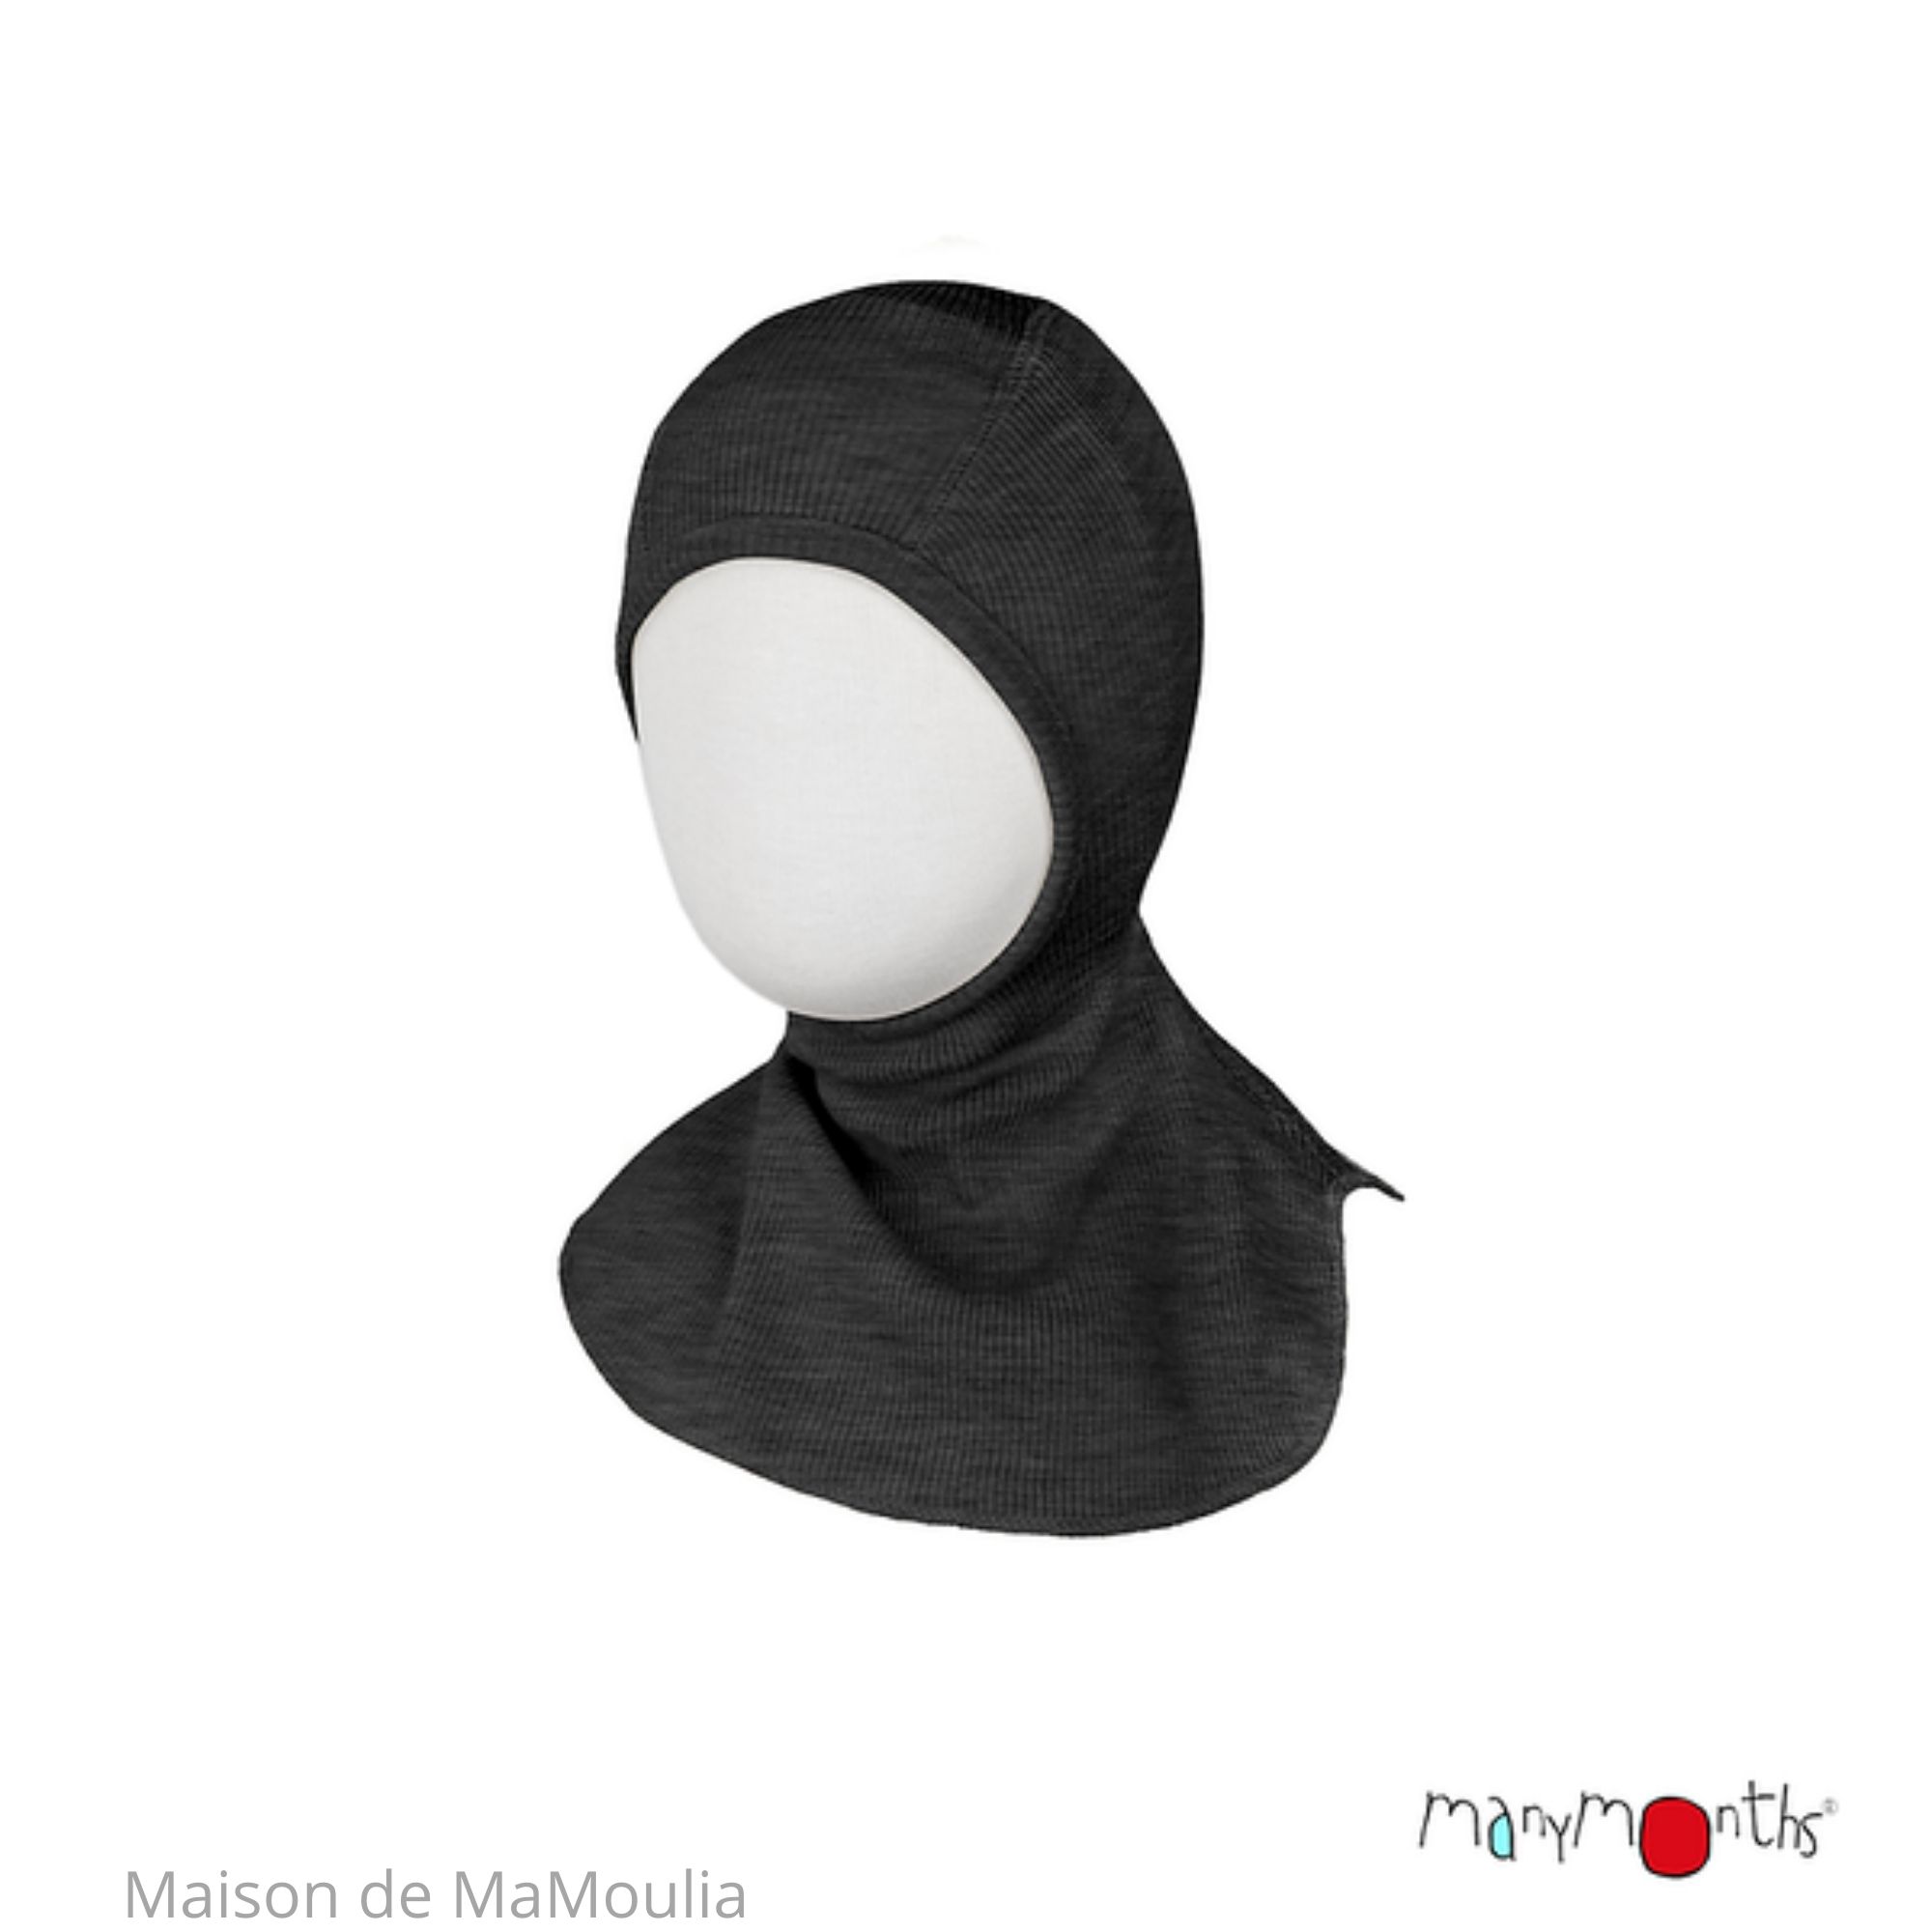 cagoule-bebe-enfant-evolutive-pure-laine-merinos-manymonths-maison-de-mamoulia-foggy-black(1)